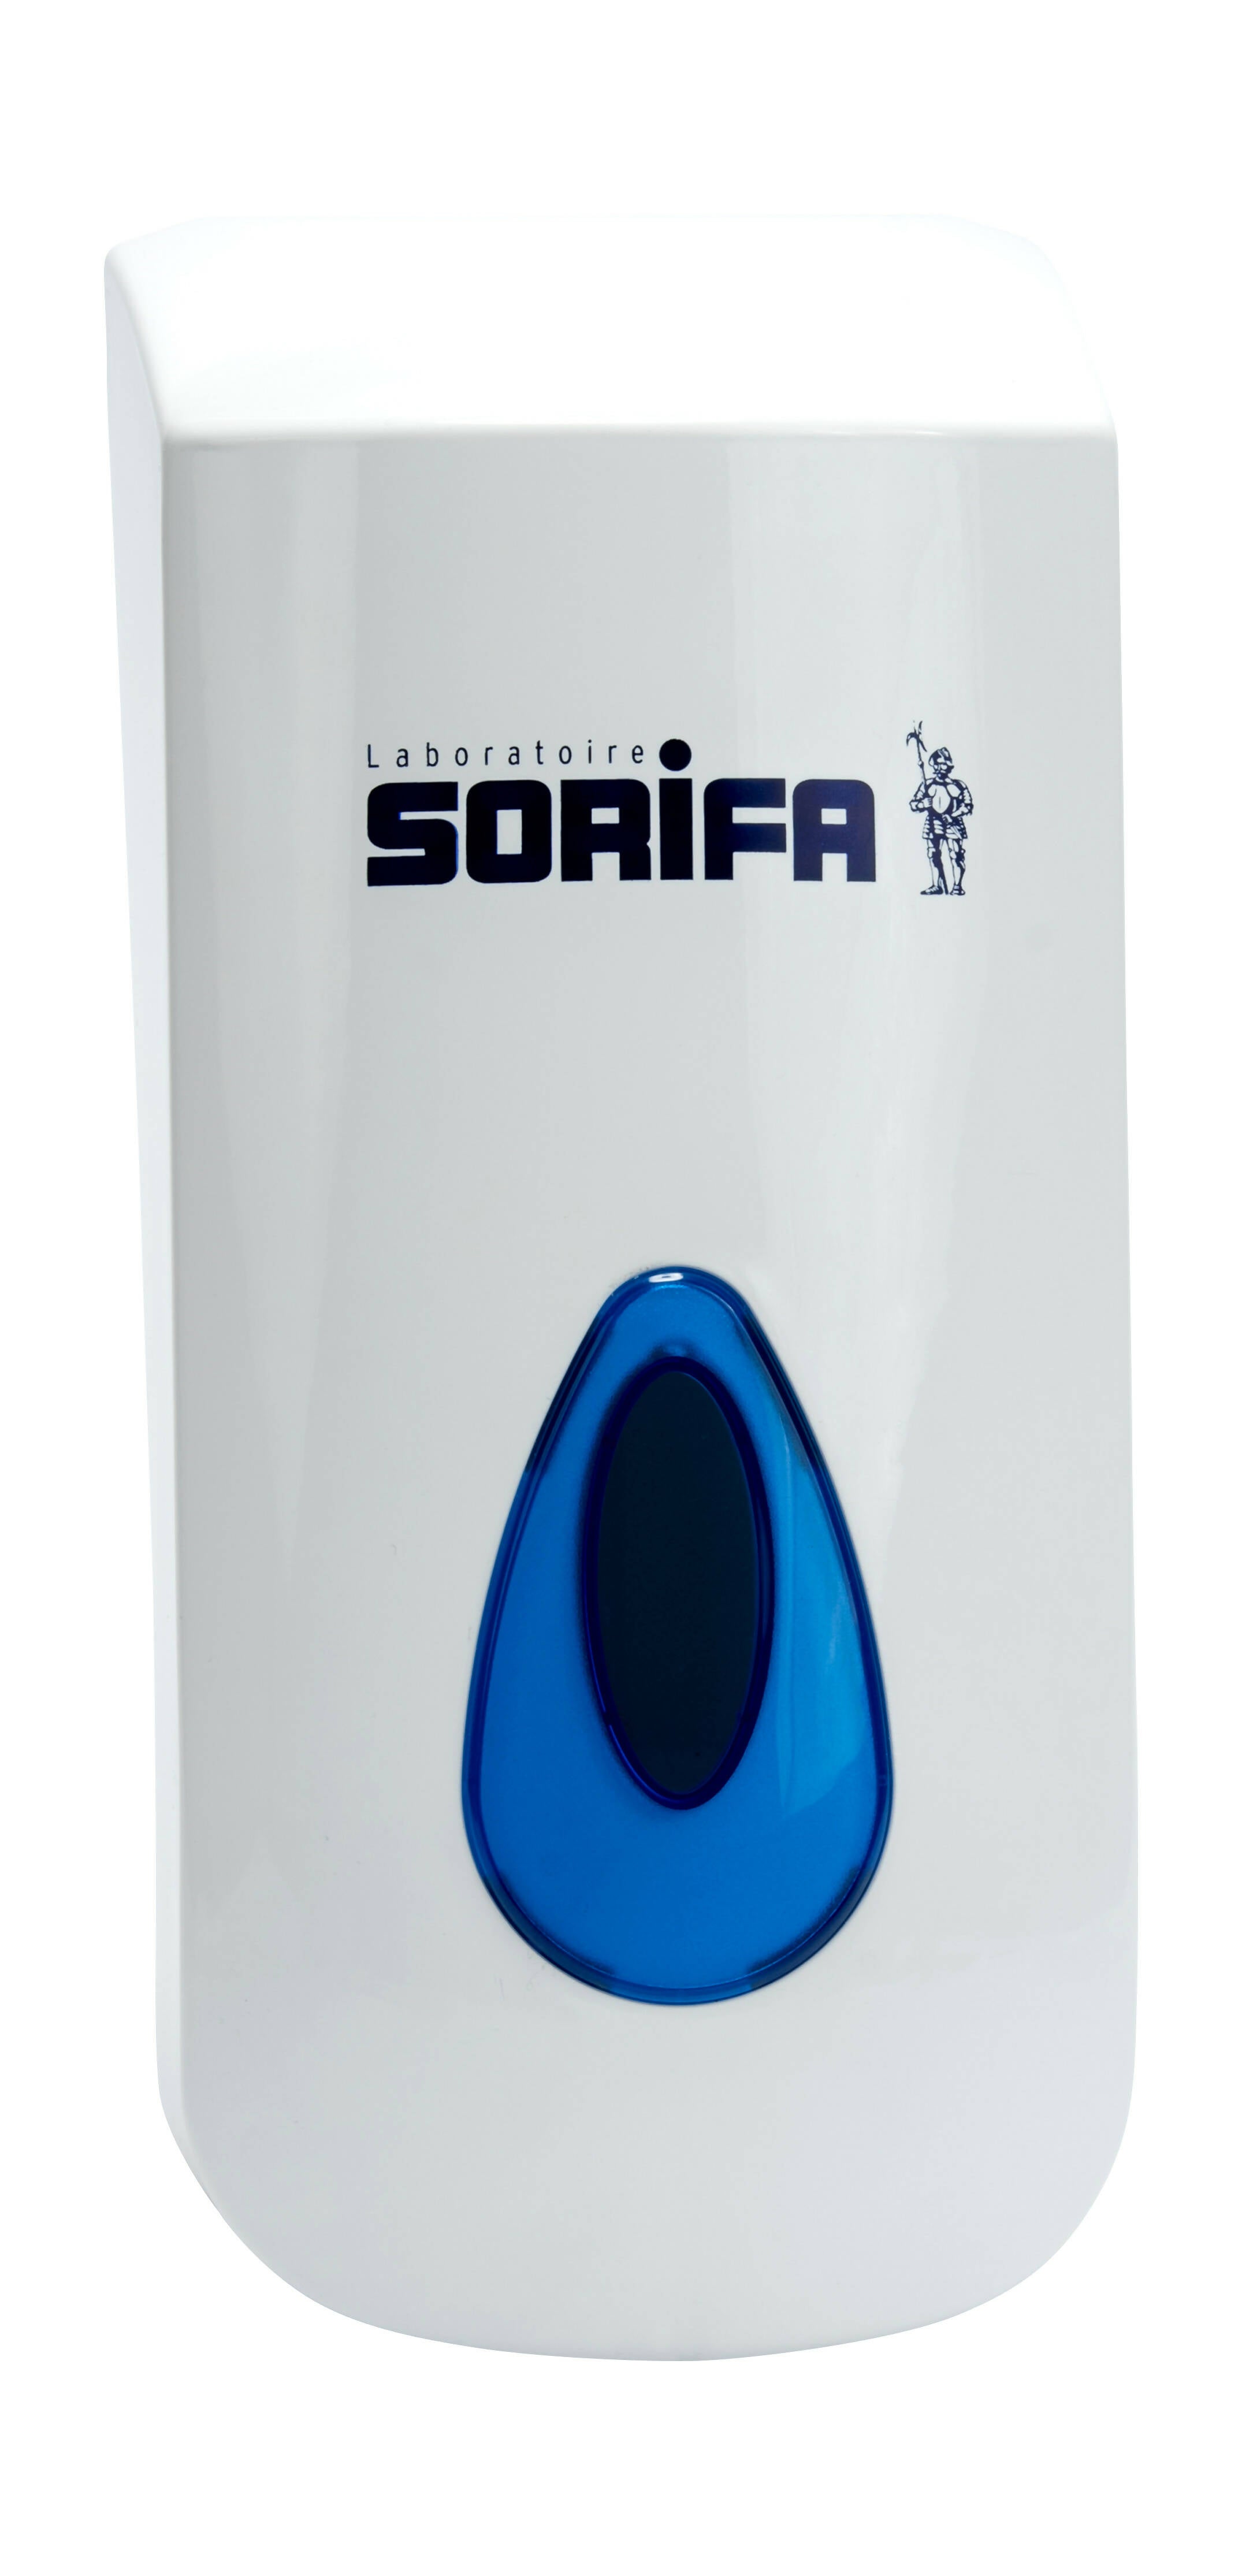 SORIFA - 5er-Set - Robuster, ergonomischer, abschließbarer Wandspender aus Metall für 1L-Flasche der Marke SORIFA - Für Gele und Flüssigseifen.